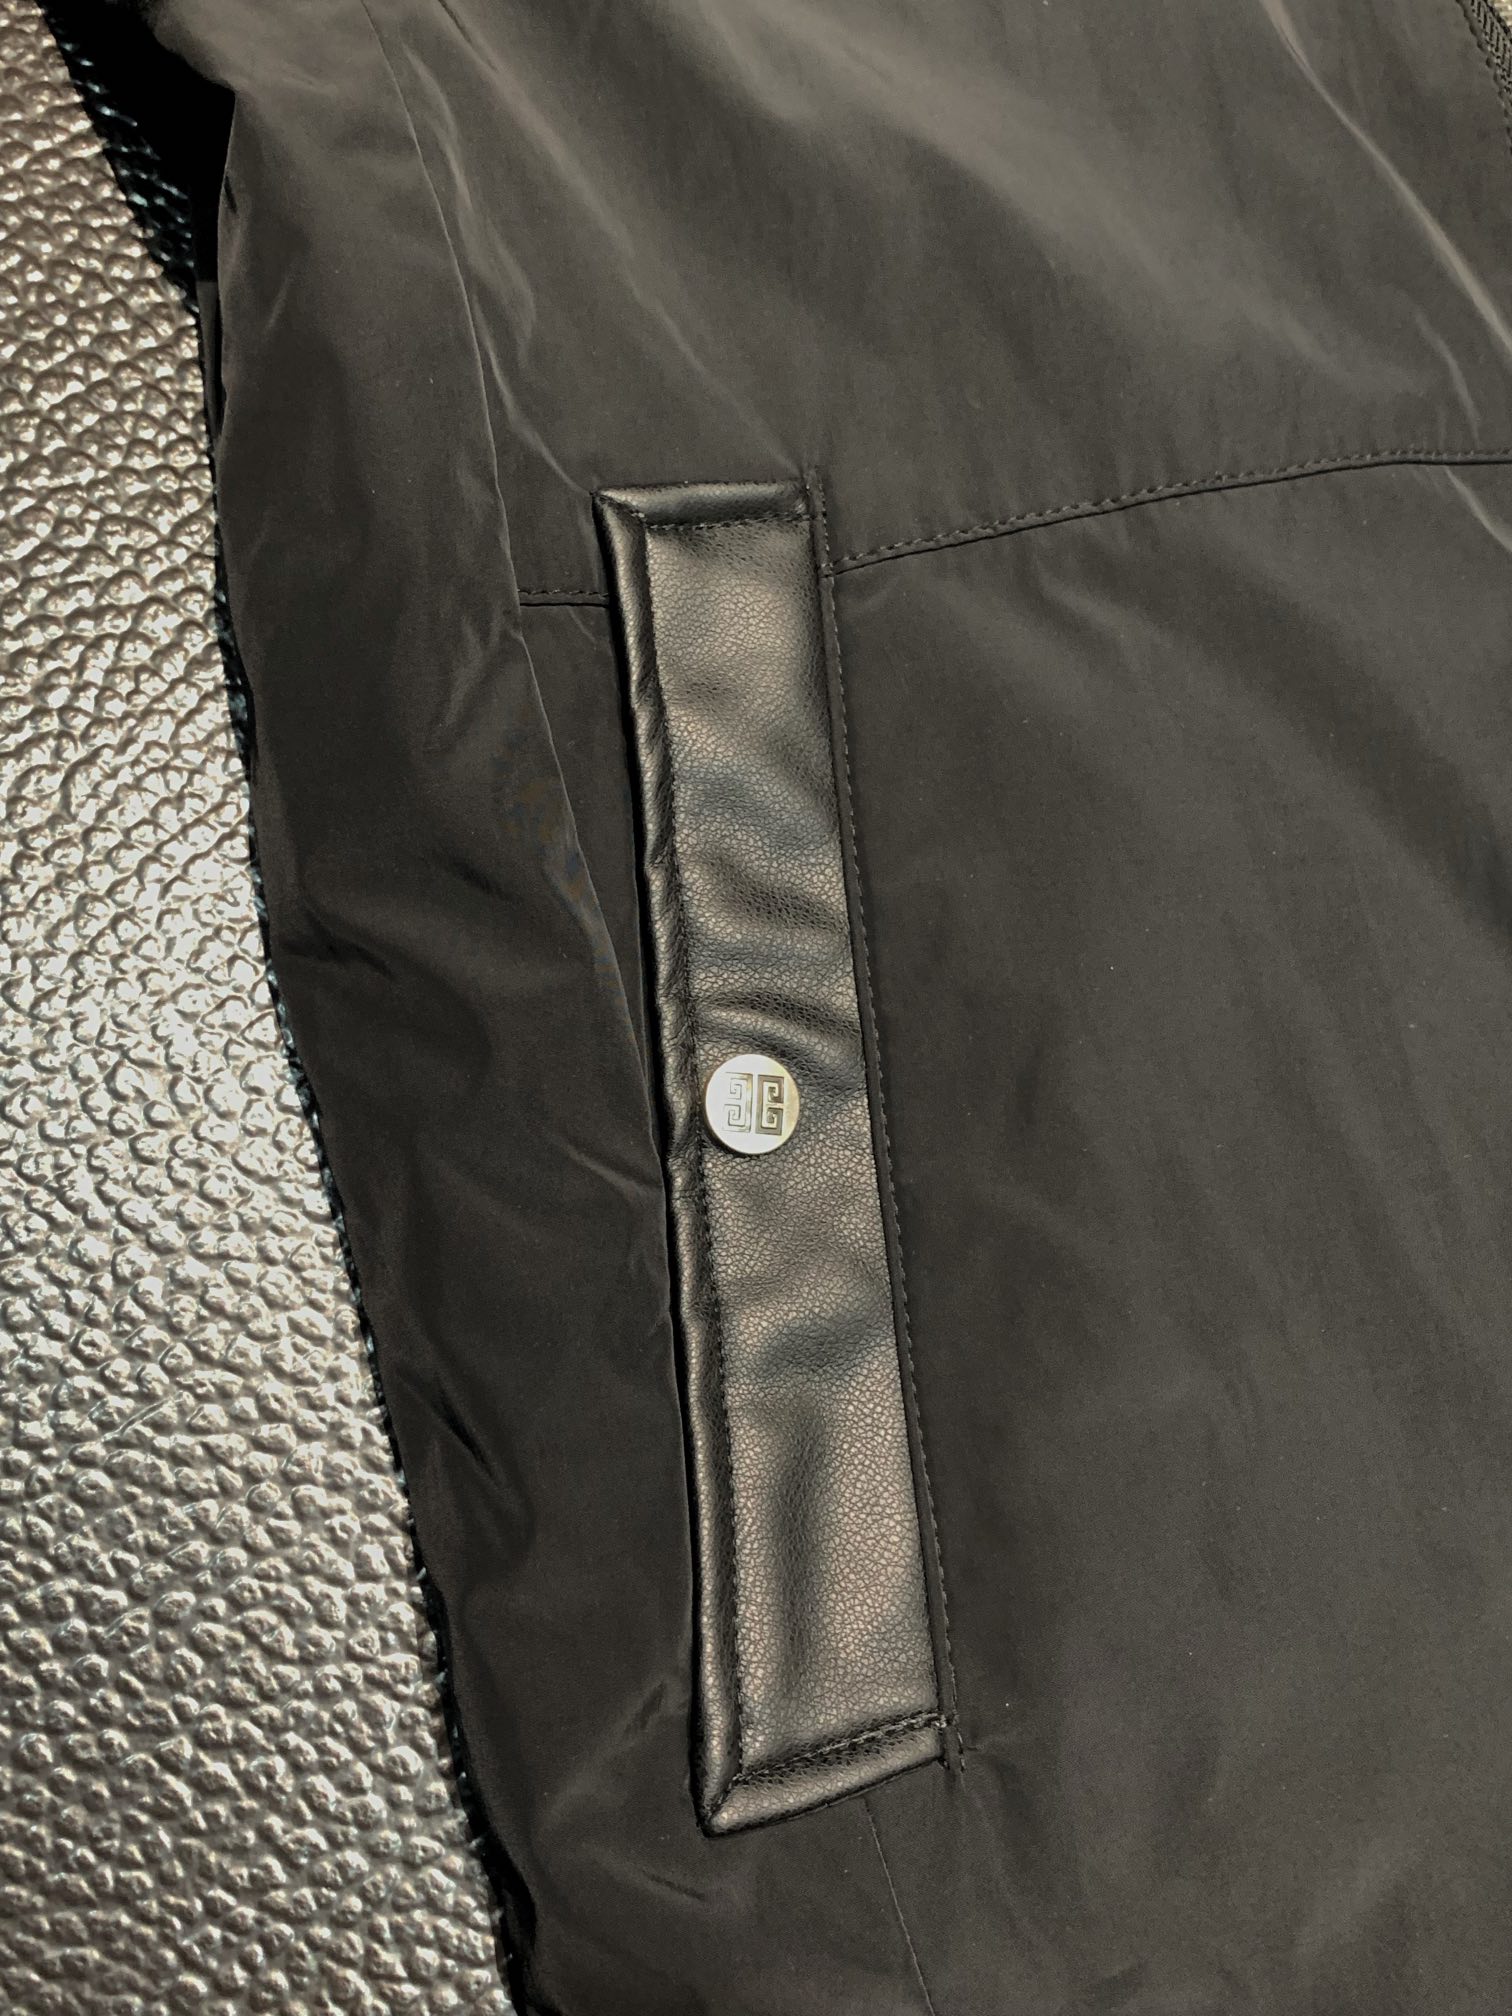 纪梵希独家专供最新四季时尚翻领夹克休闲经典拉链外套经典设计感与颜值爆棚的外套品质更是无法挑剔品控可以直接